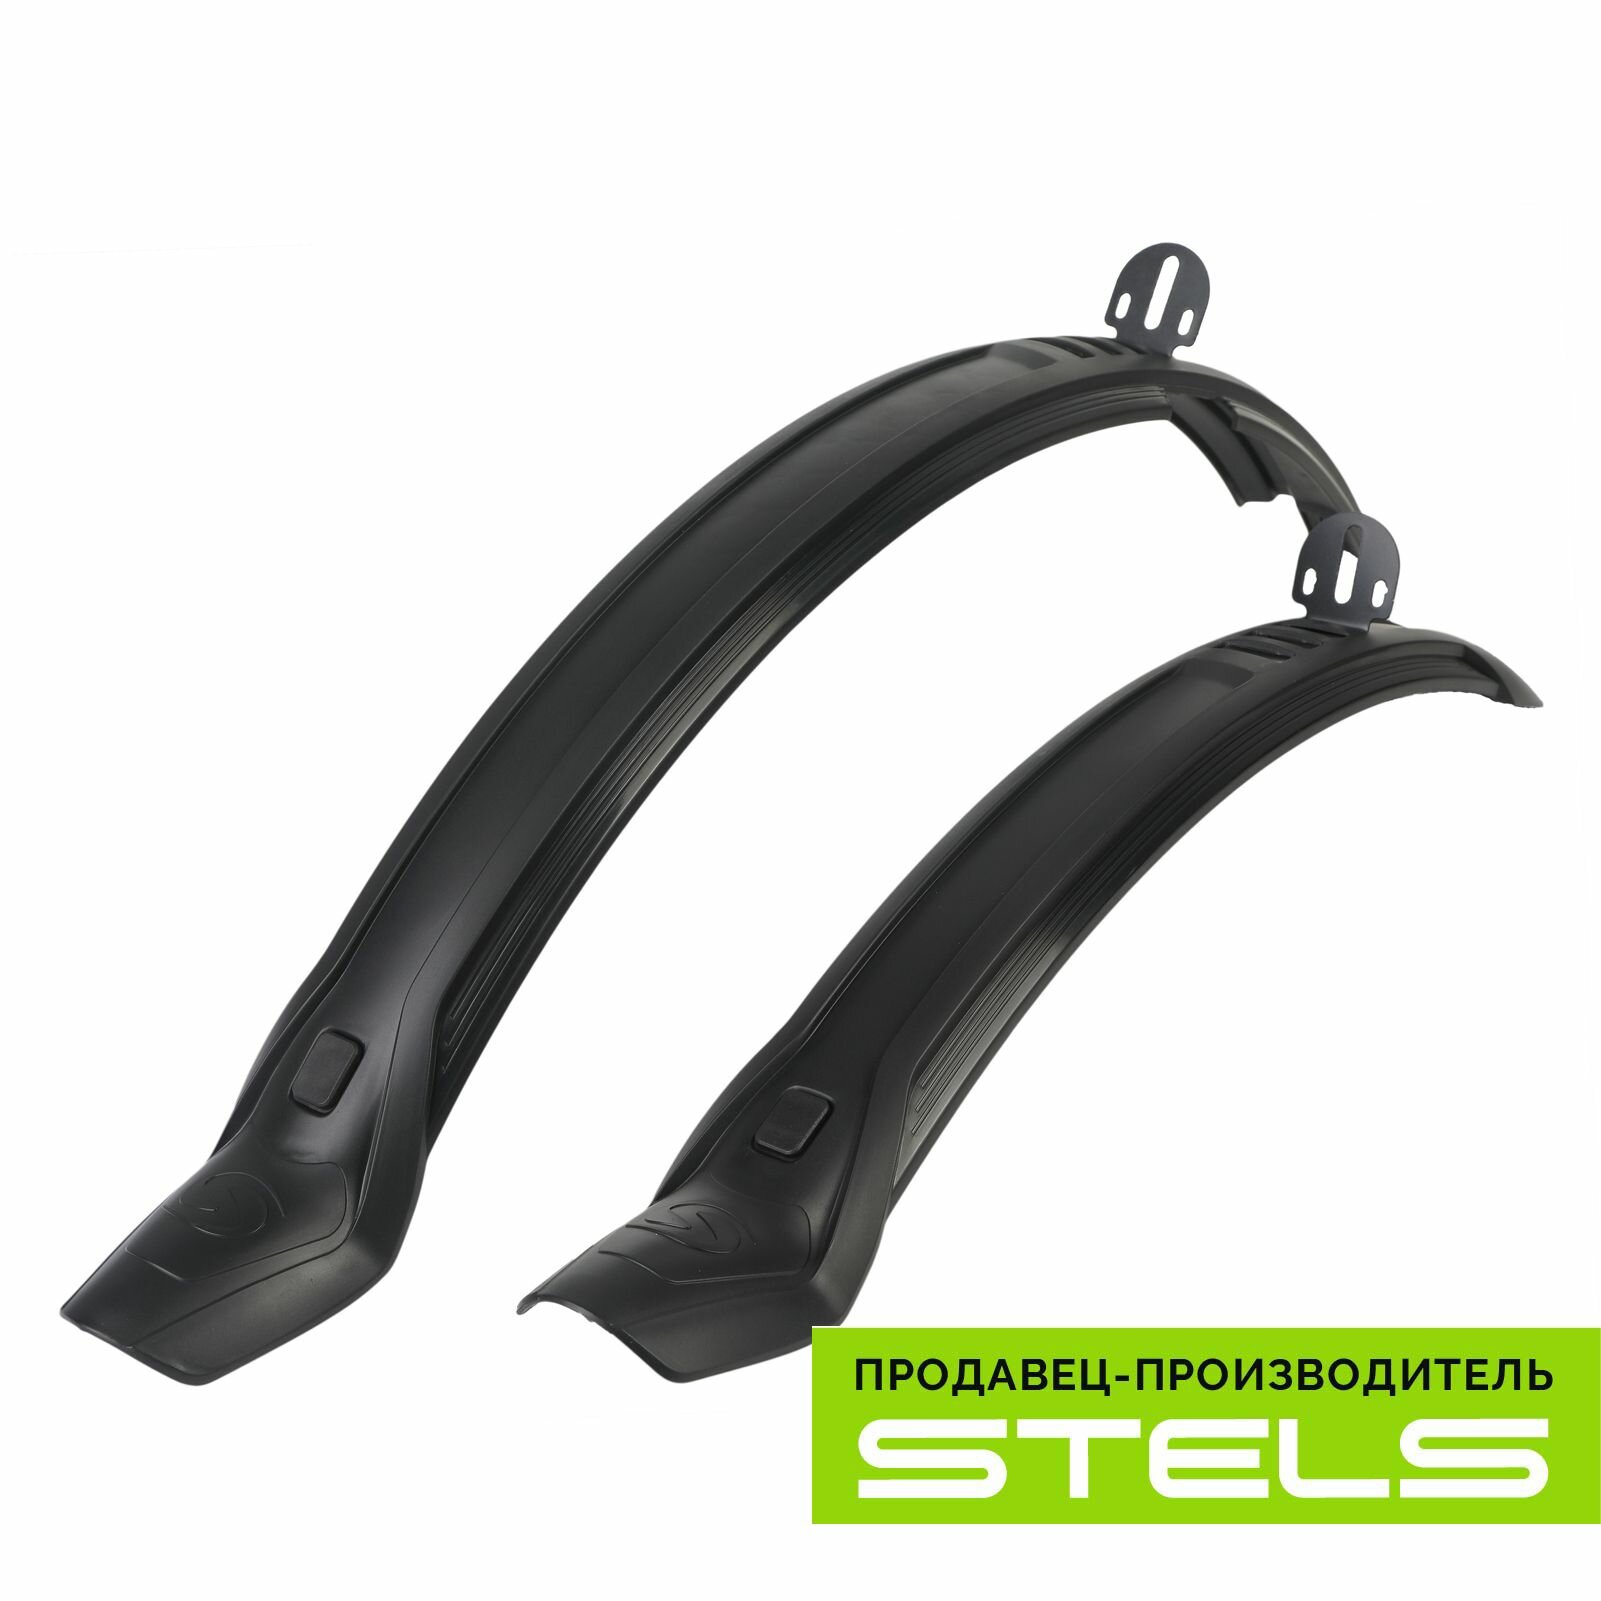 Крылья для велосипеда 24" STELS XH-B267 пластиковые чёрные, в индивидуальной упаковке (комплект) NEW (item:020)